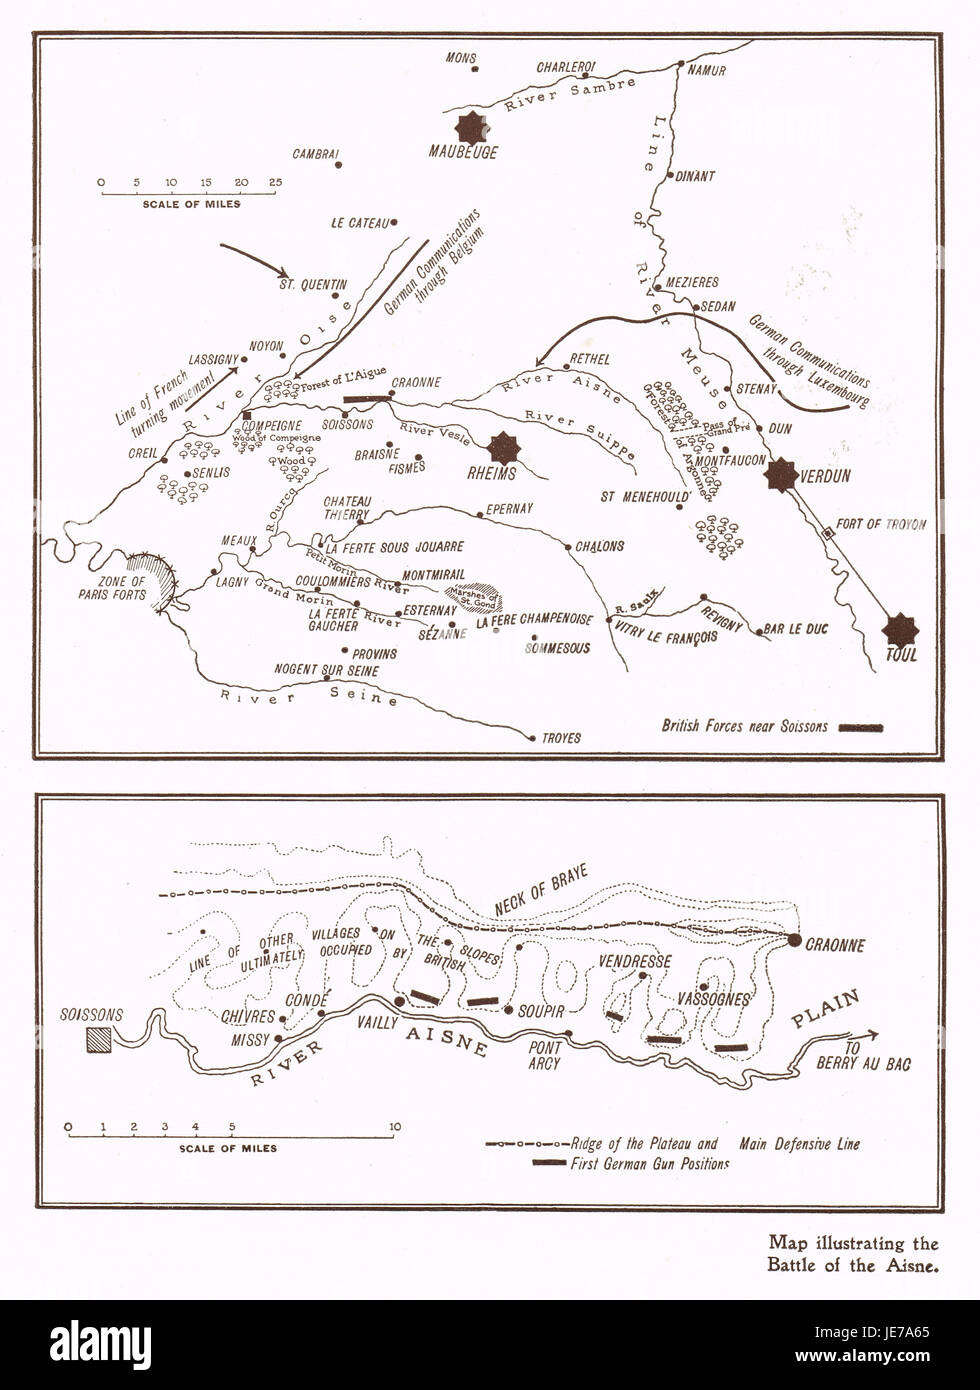 Mapa que ilustra la batalla del Aisne en 1914 Foto de stock